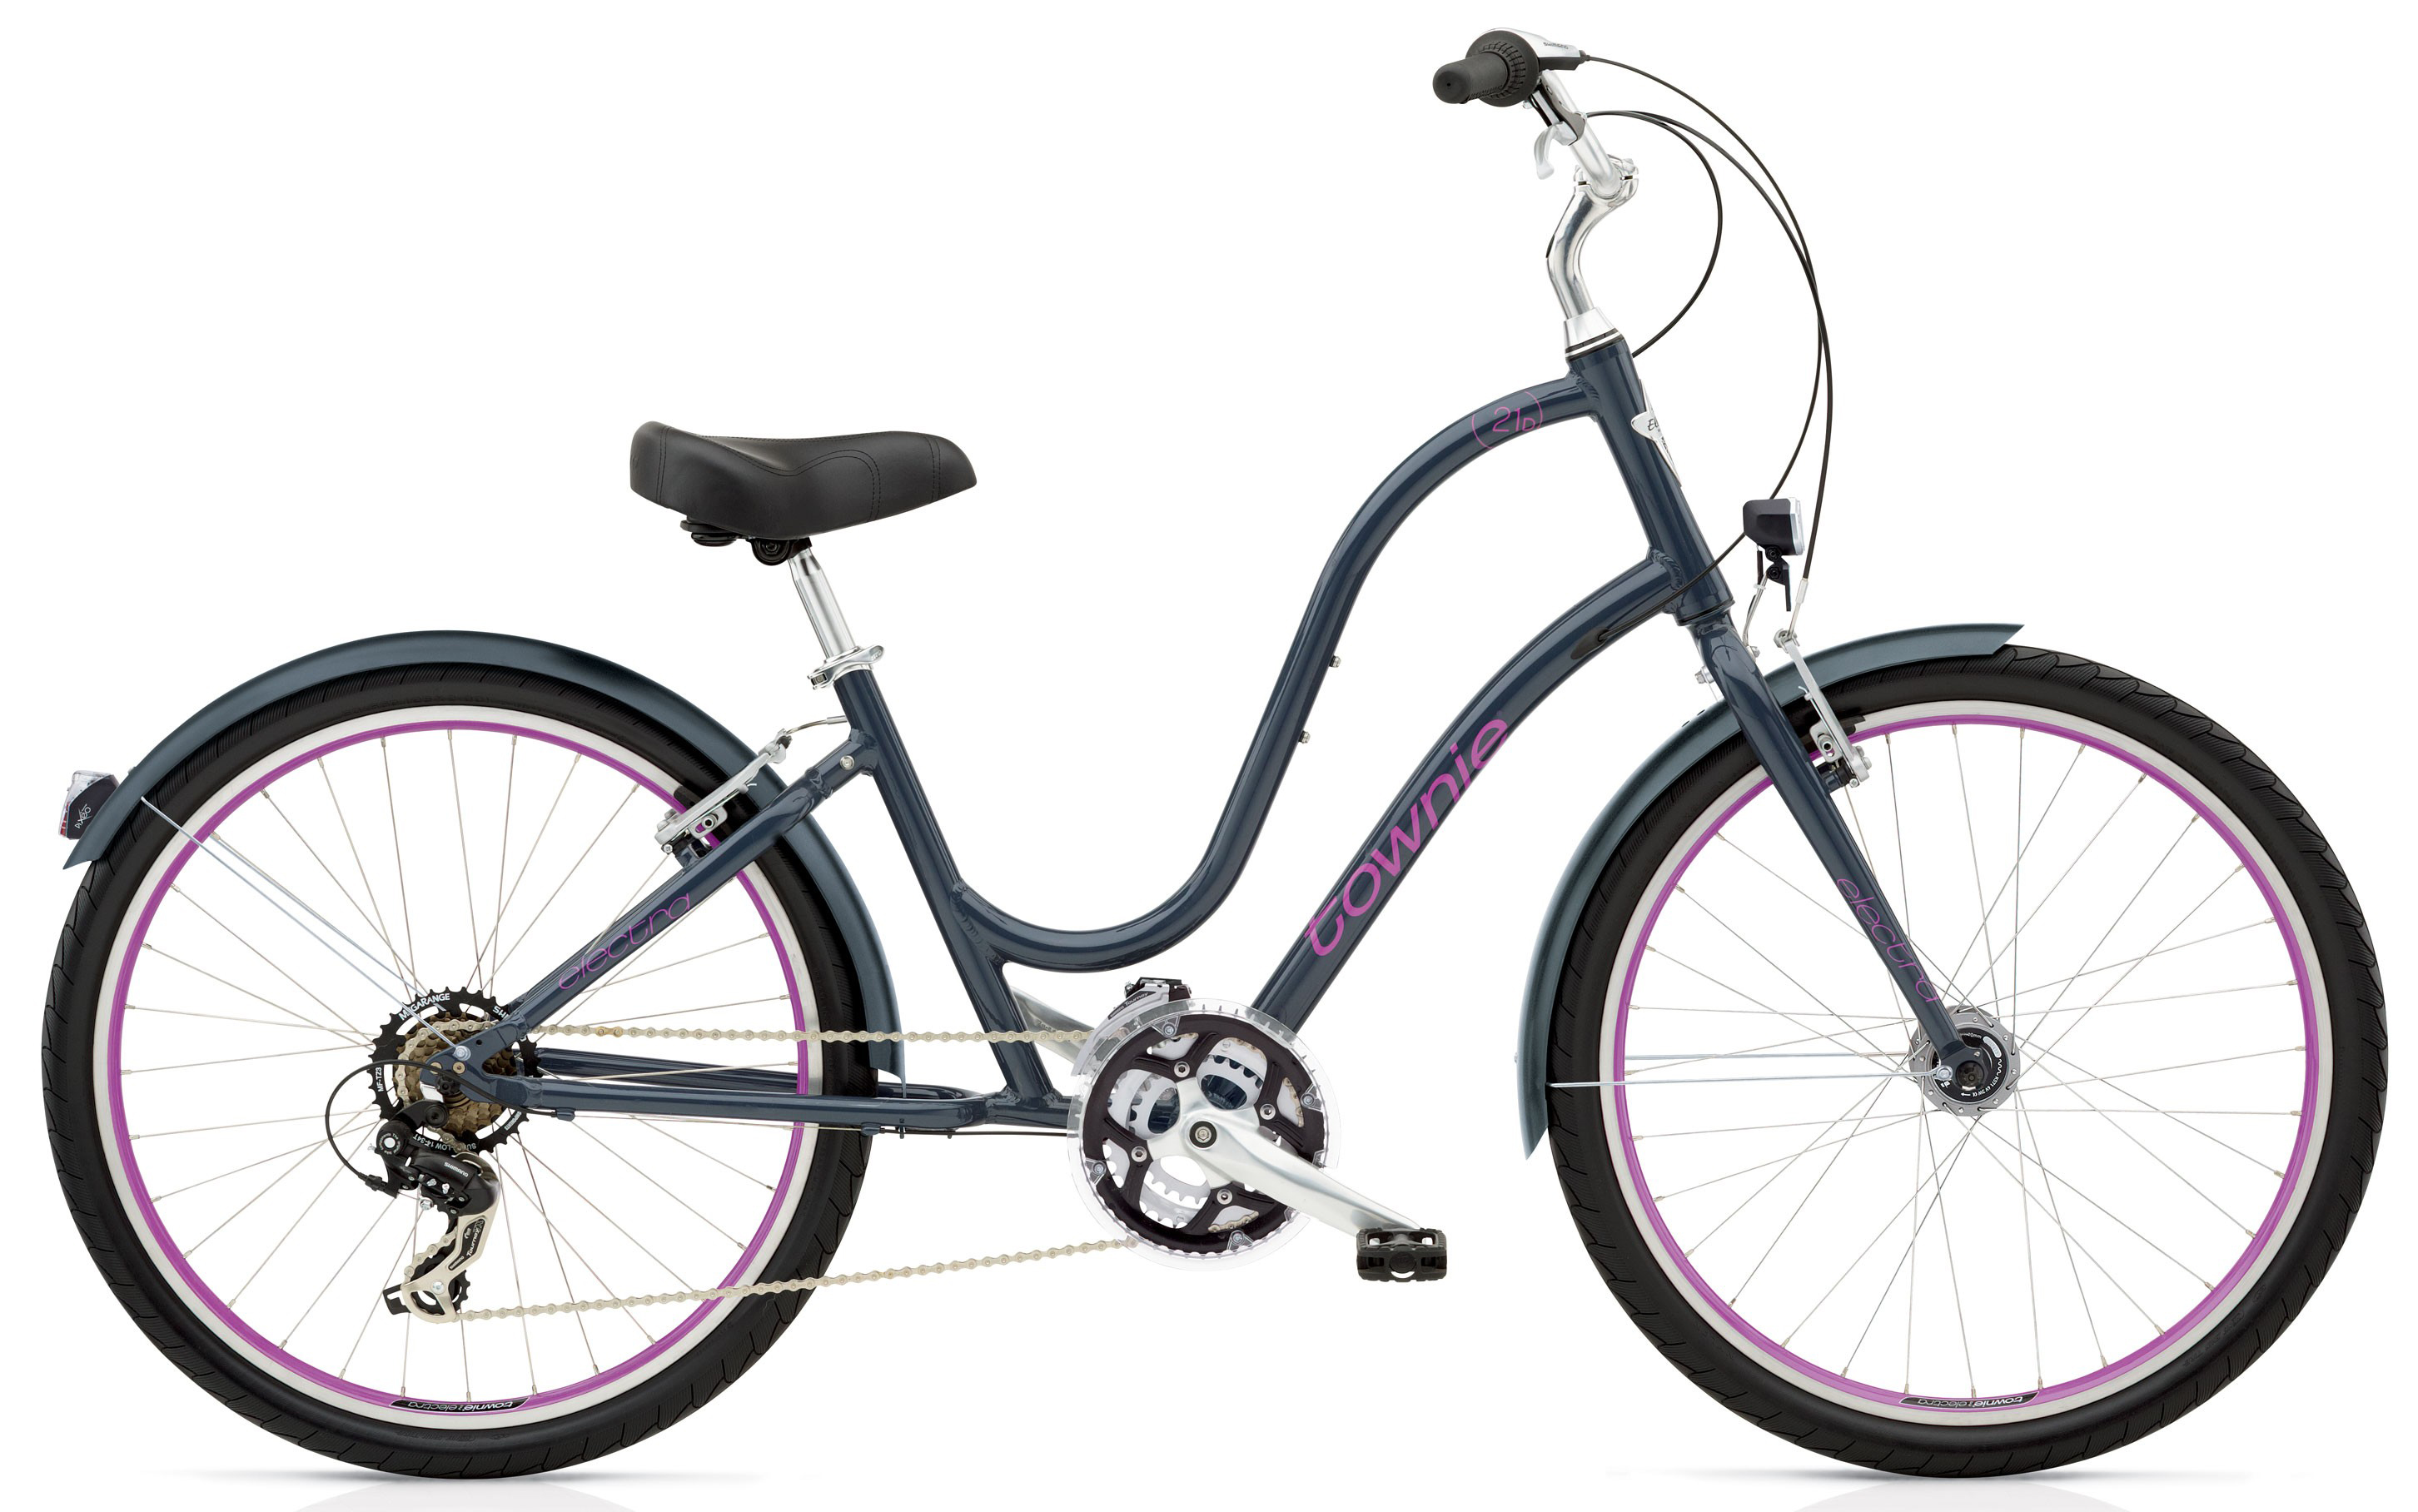  Отзывы о Женском велосипеде Electra Townie Original 21D EQ 2019